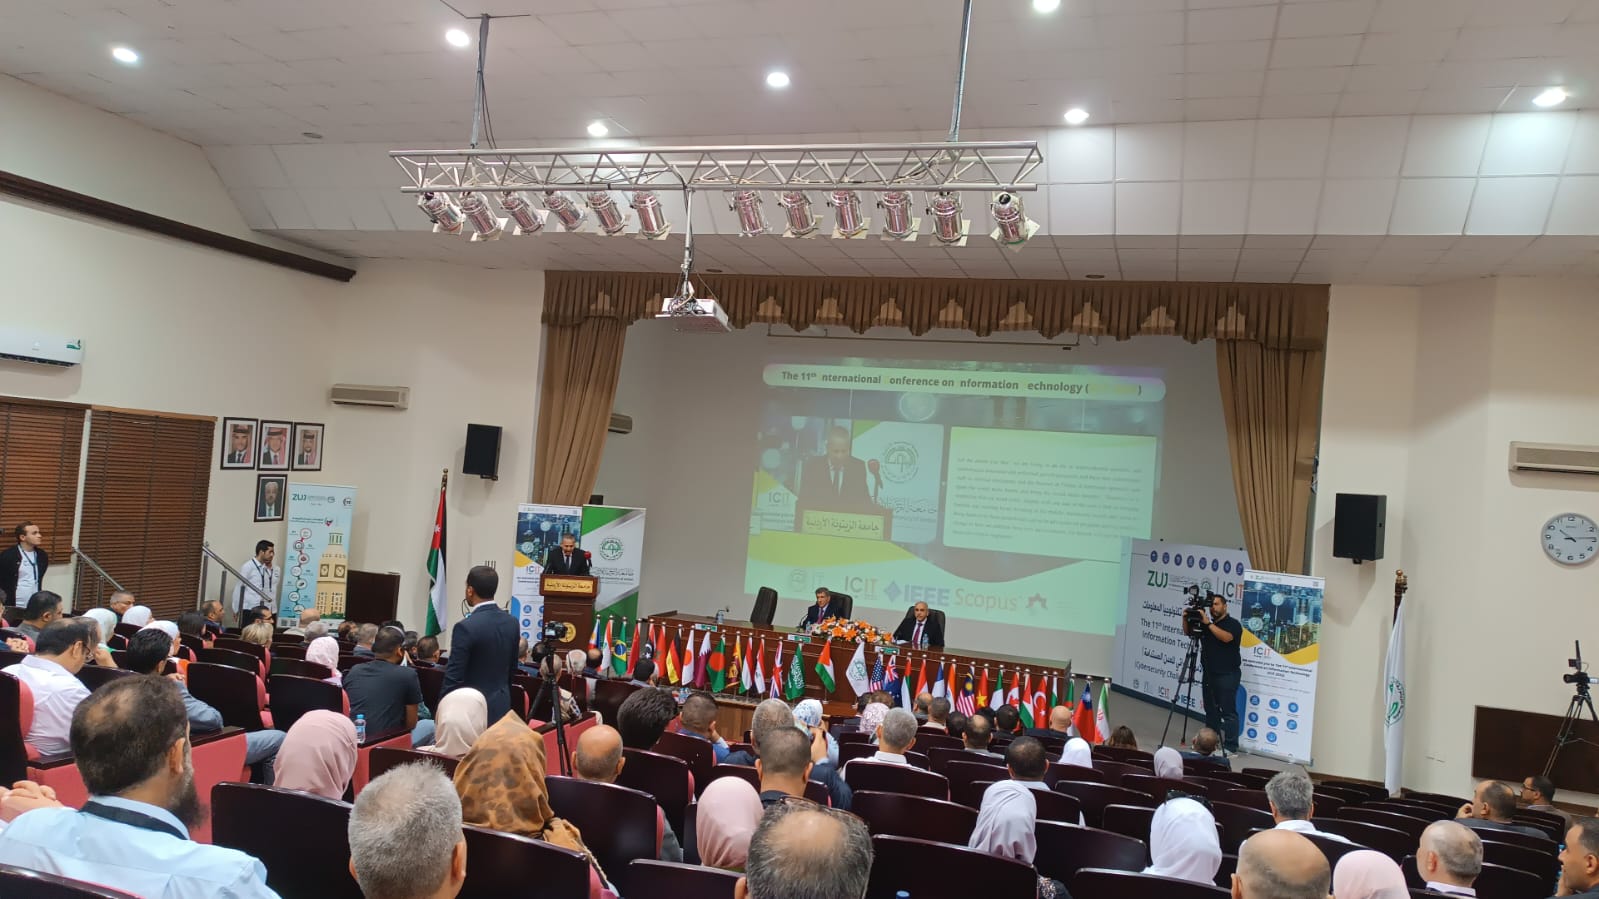 فريق بحثي من الجامعة العربية الأمريكية يشارك في المؤتمر الدولي لتكنولوجيا المعلومات بعنوان "تحديات الأمن السيبراني للمدن المستدامة"